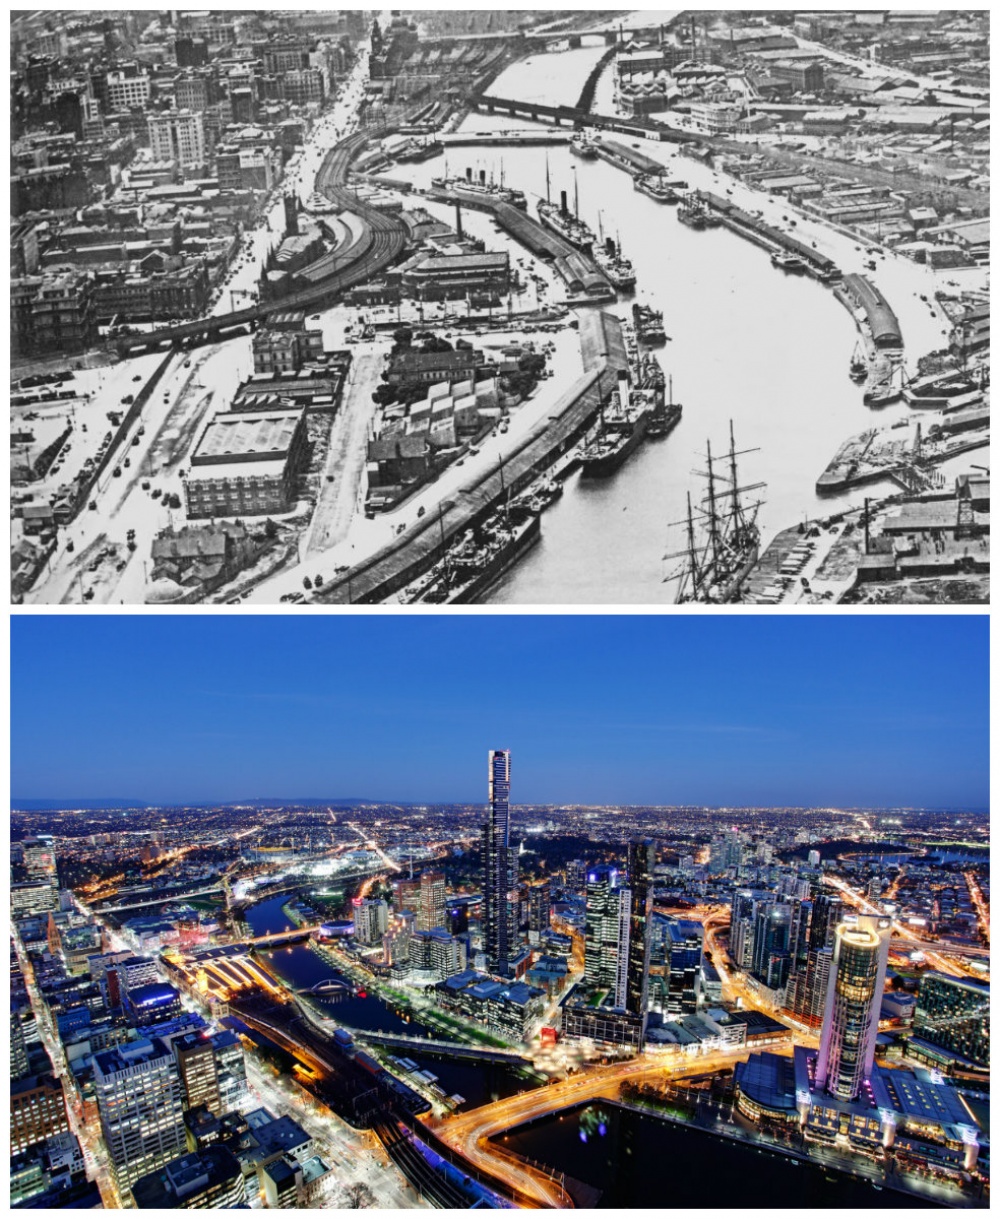 Η εκπληκτική αλλαγή των μεγαλύτερων πόλεων με το πέρασμα του χρόνου - Εικόνα 9